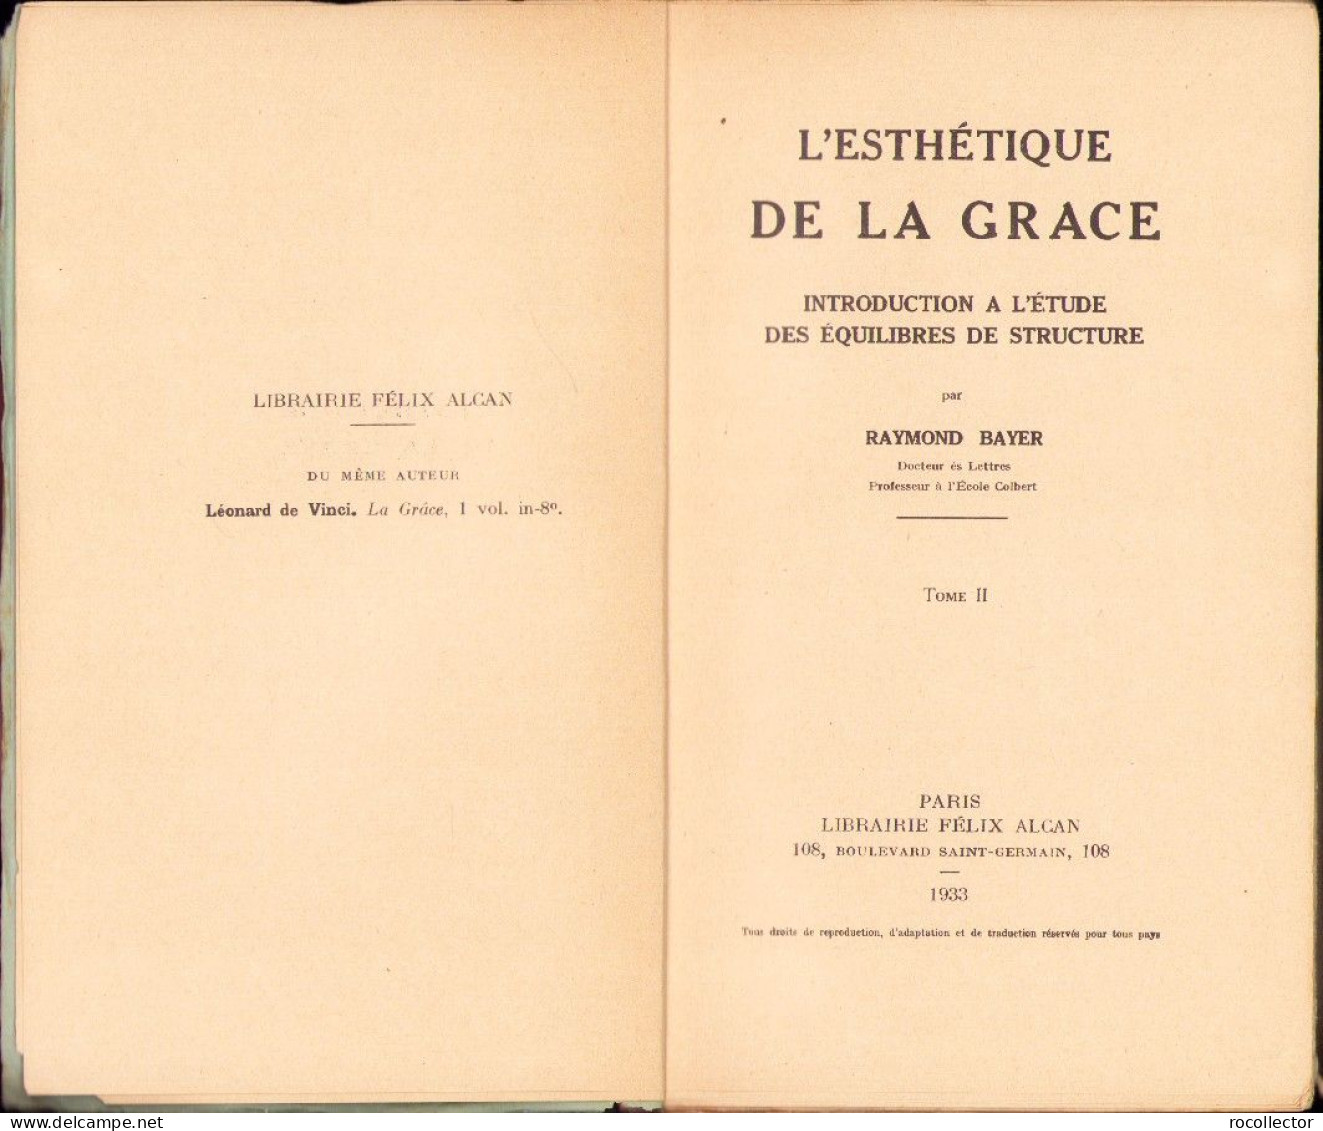 L’esthetique De La Grace, Introduction A L’etude Des Equilibres De Structure, Tome II, Par Raymond Bayer, 1933, Paris - Libri Vecchi E Da Collezione